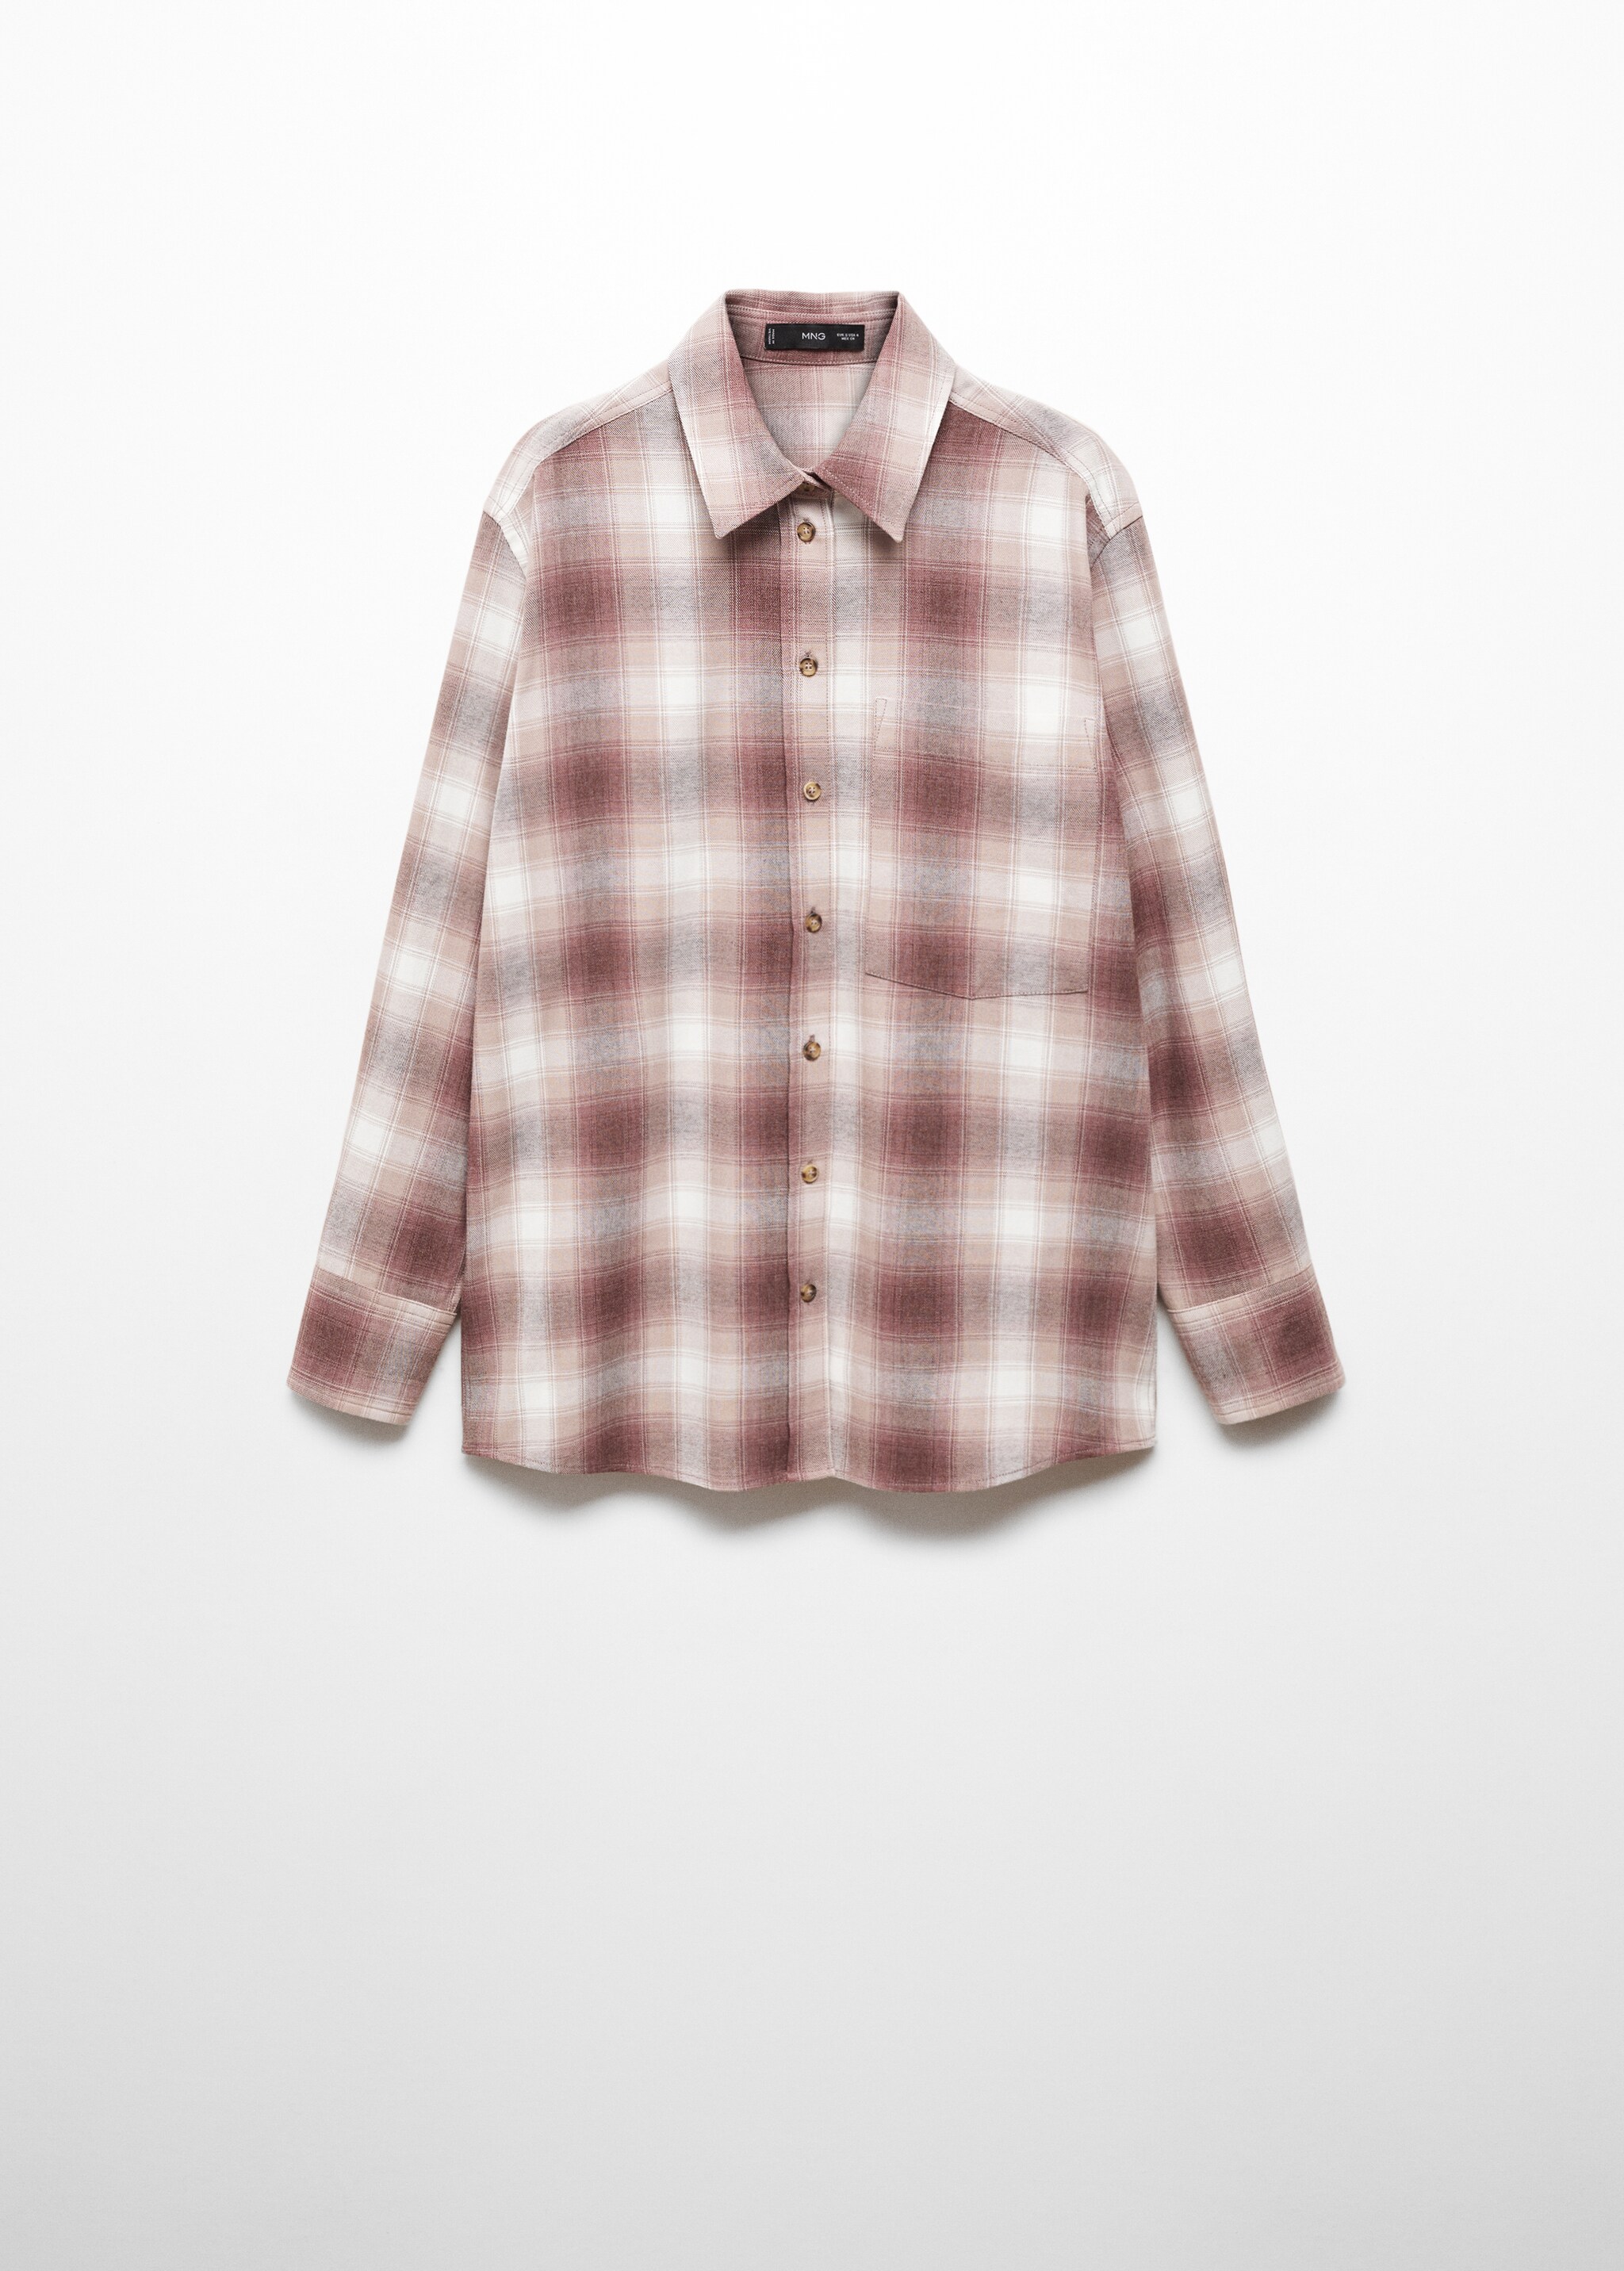 Kareli pamuklu tişört - Modelsiz ürün